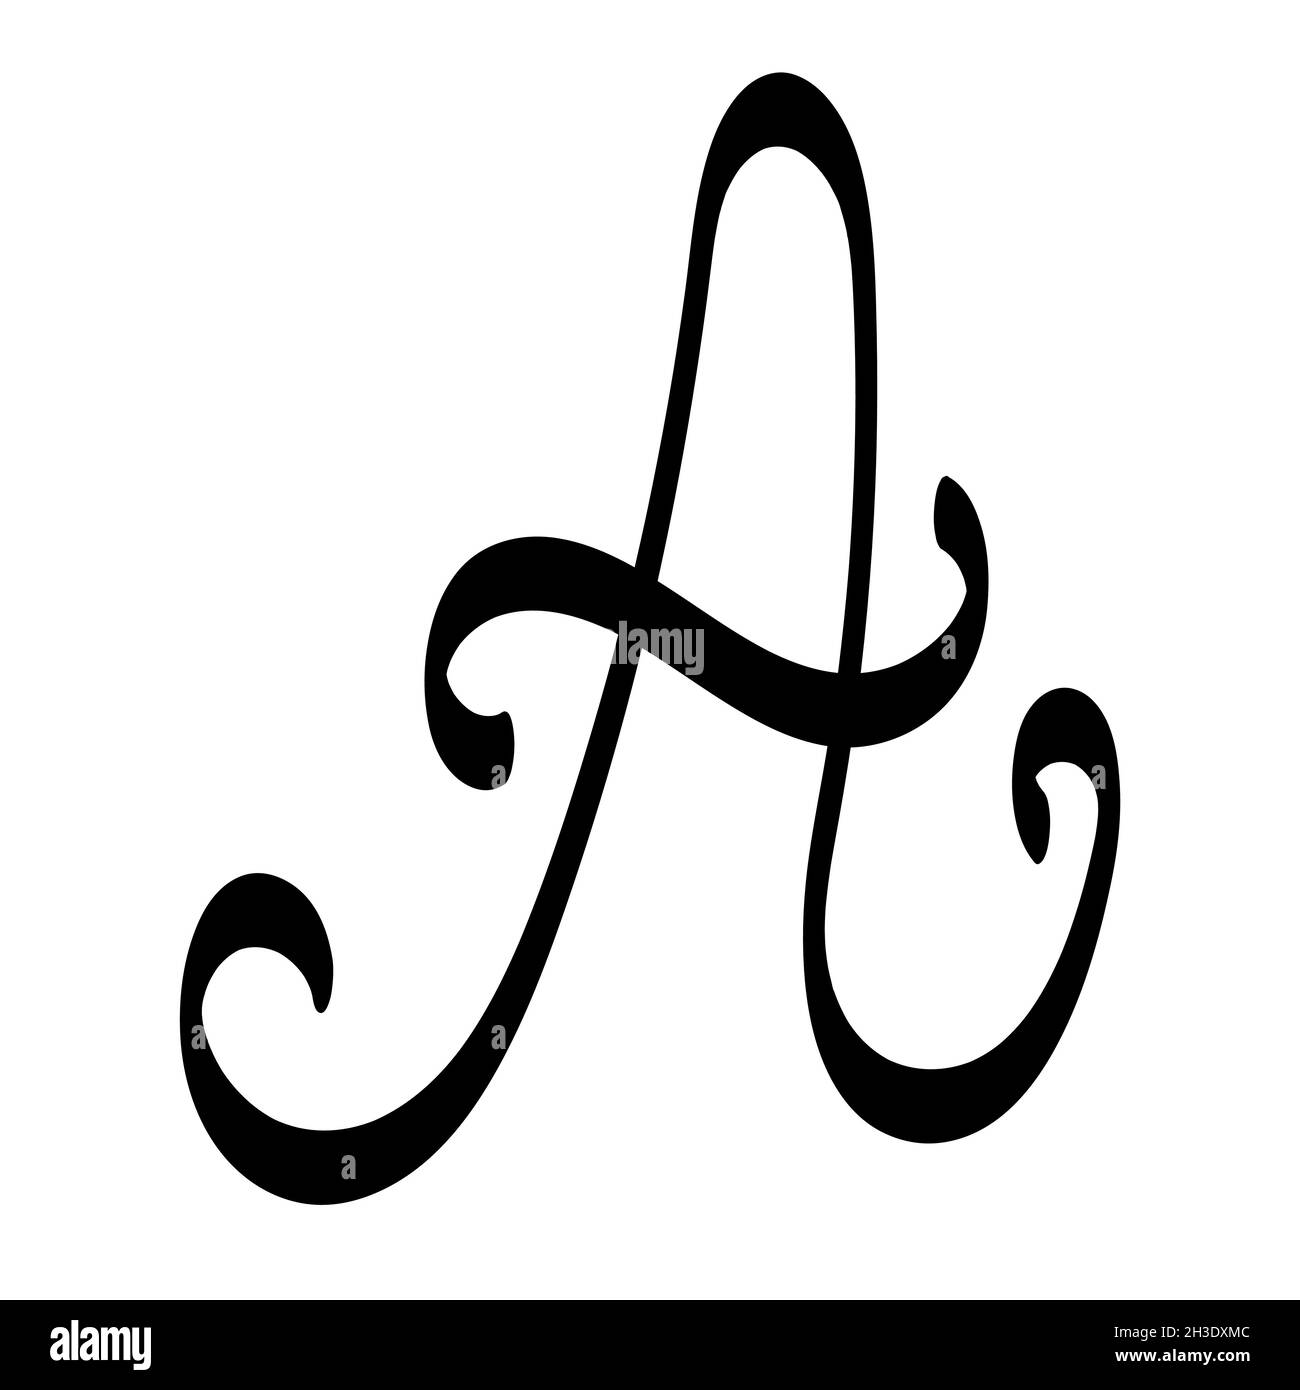 Erster Großbuchstabe Ein Logo Kalligraphie Design Stock Illustration Stock Vektor